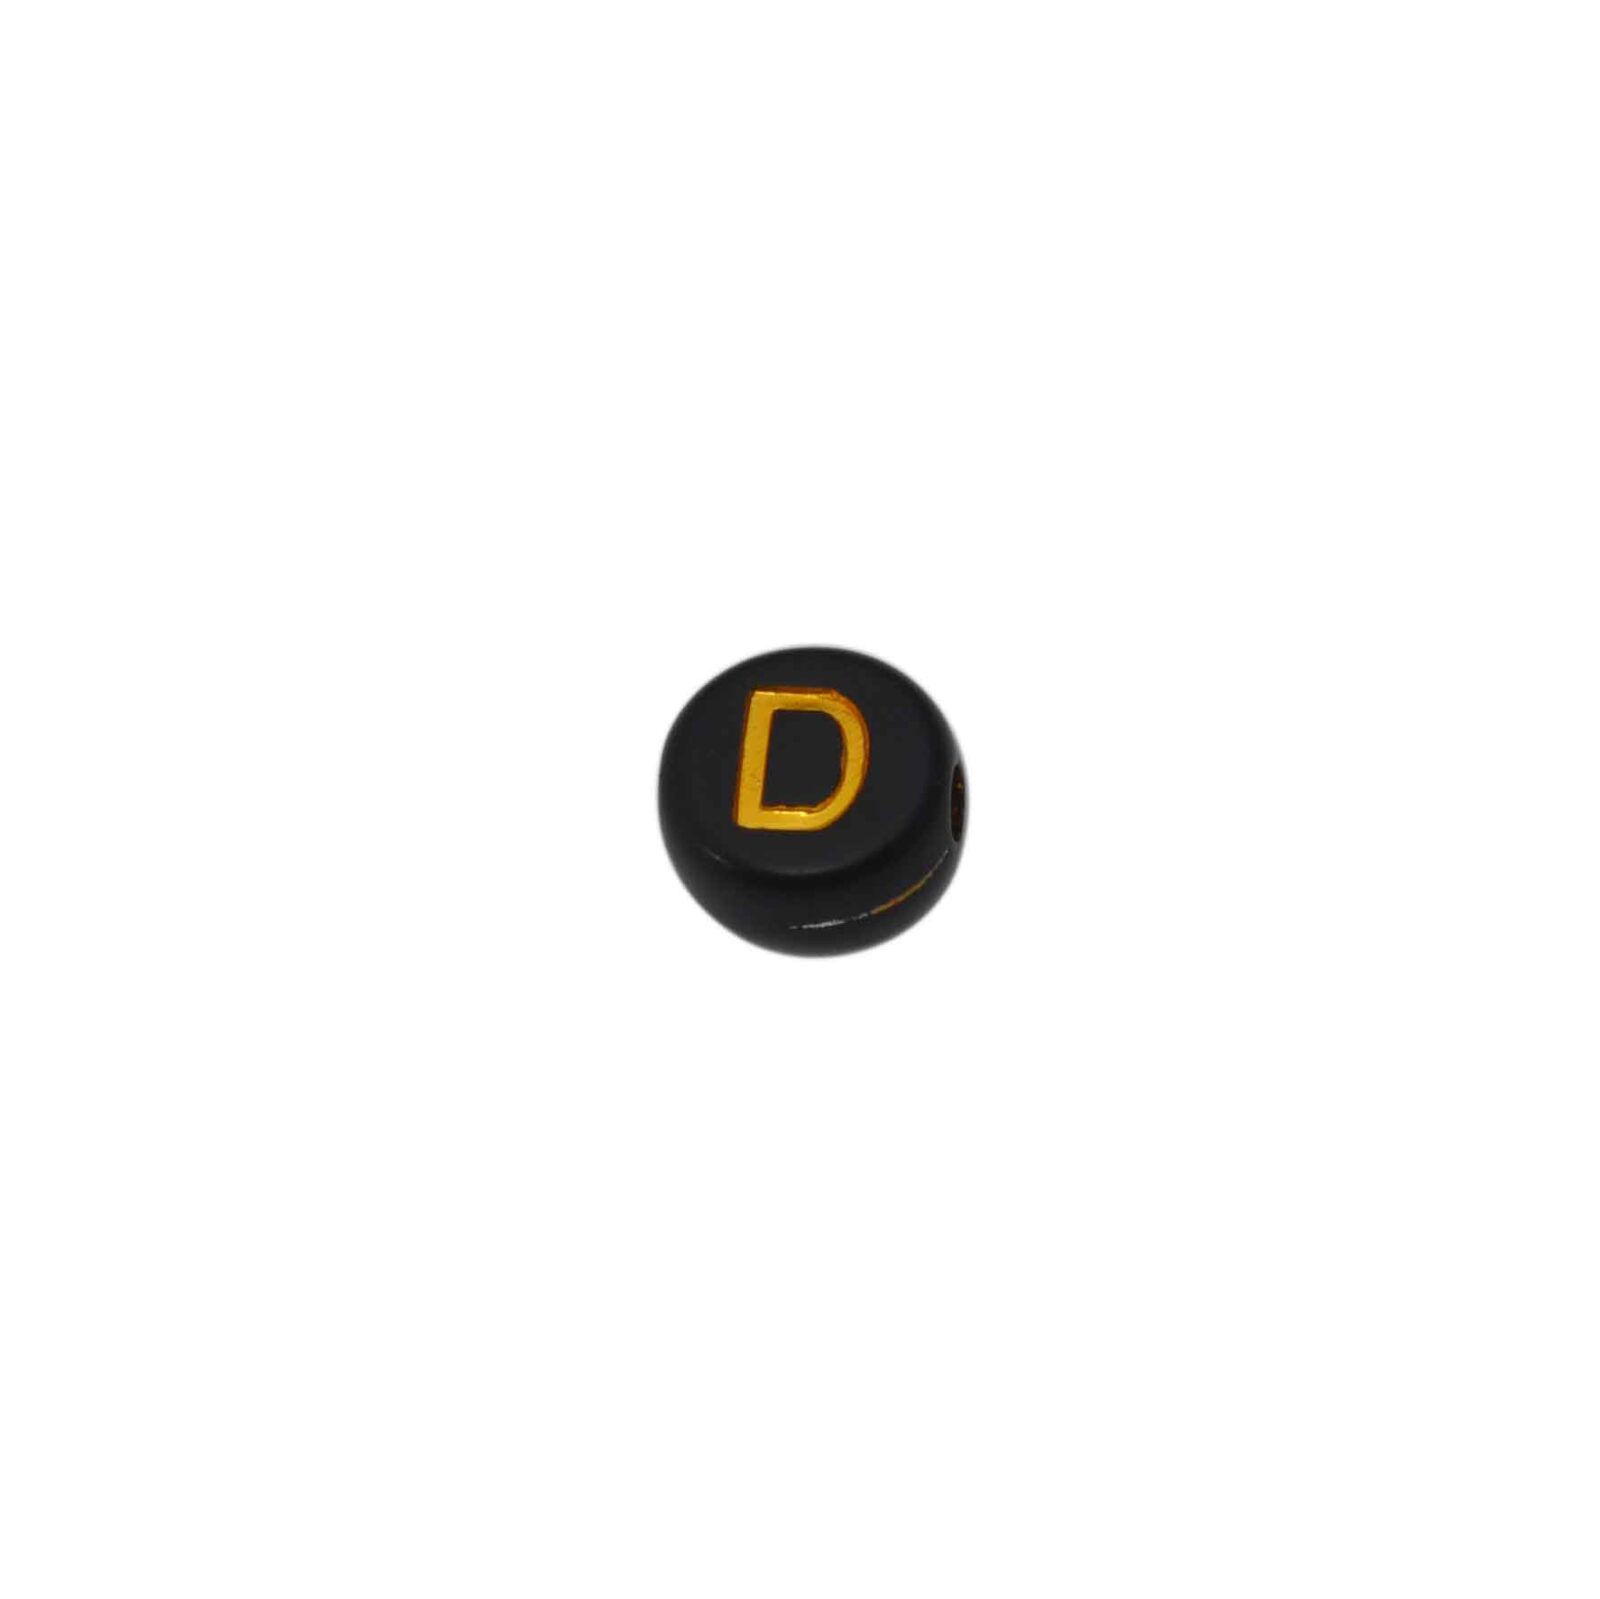 Zwarte ronde letterkraal D